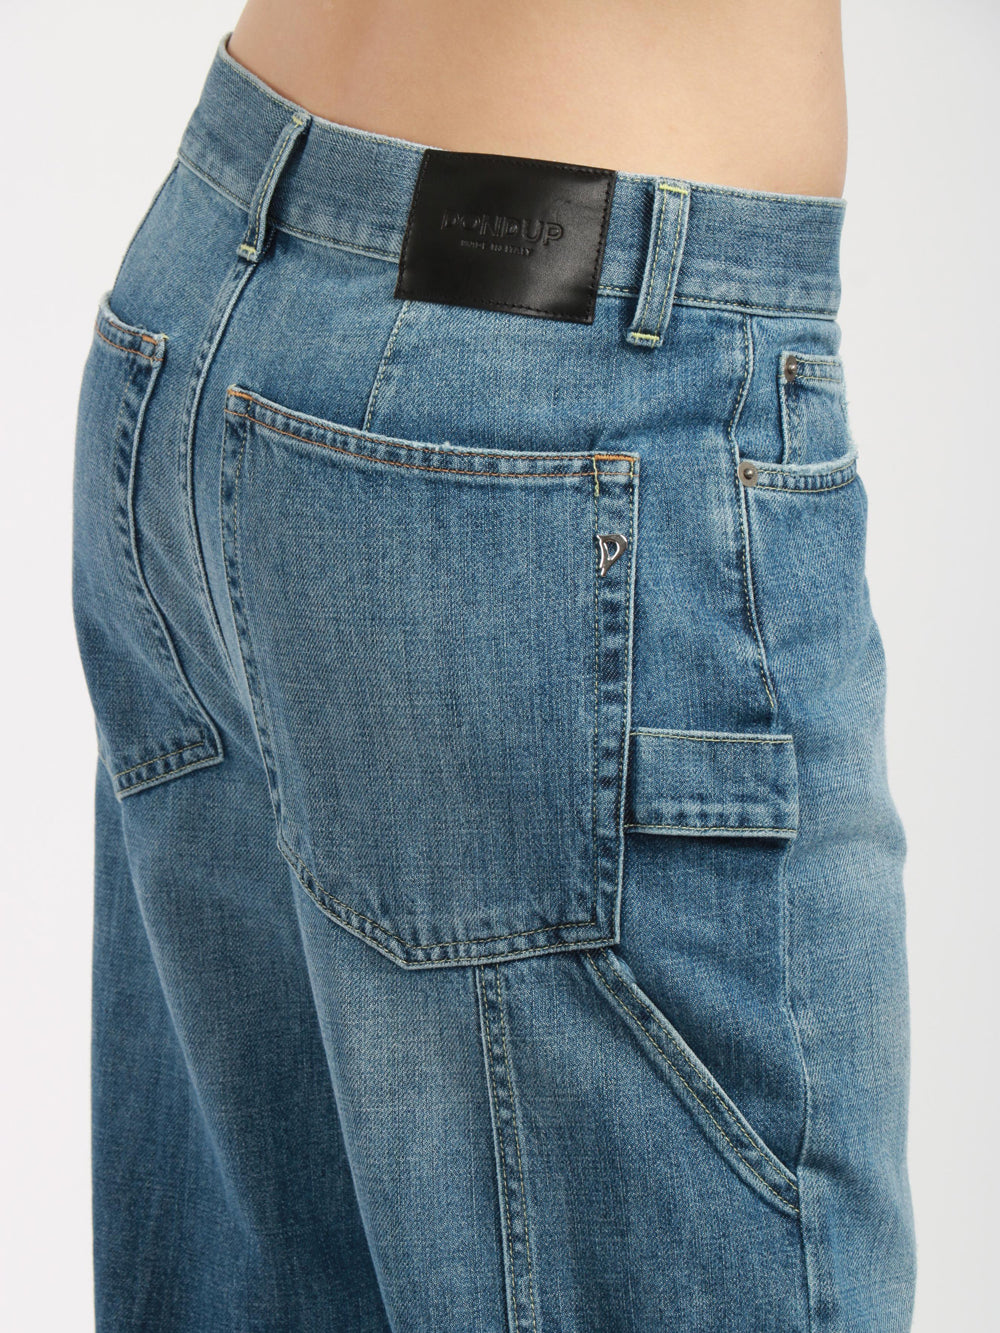 DONDUP Jeans Carrie in Denim Blu con Tasche Worker Denim